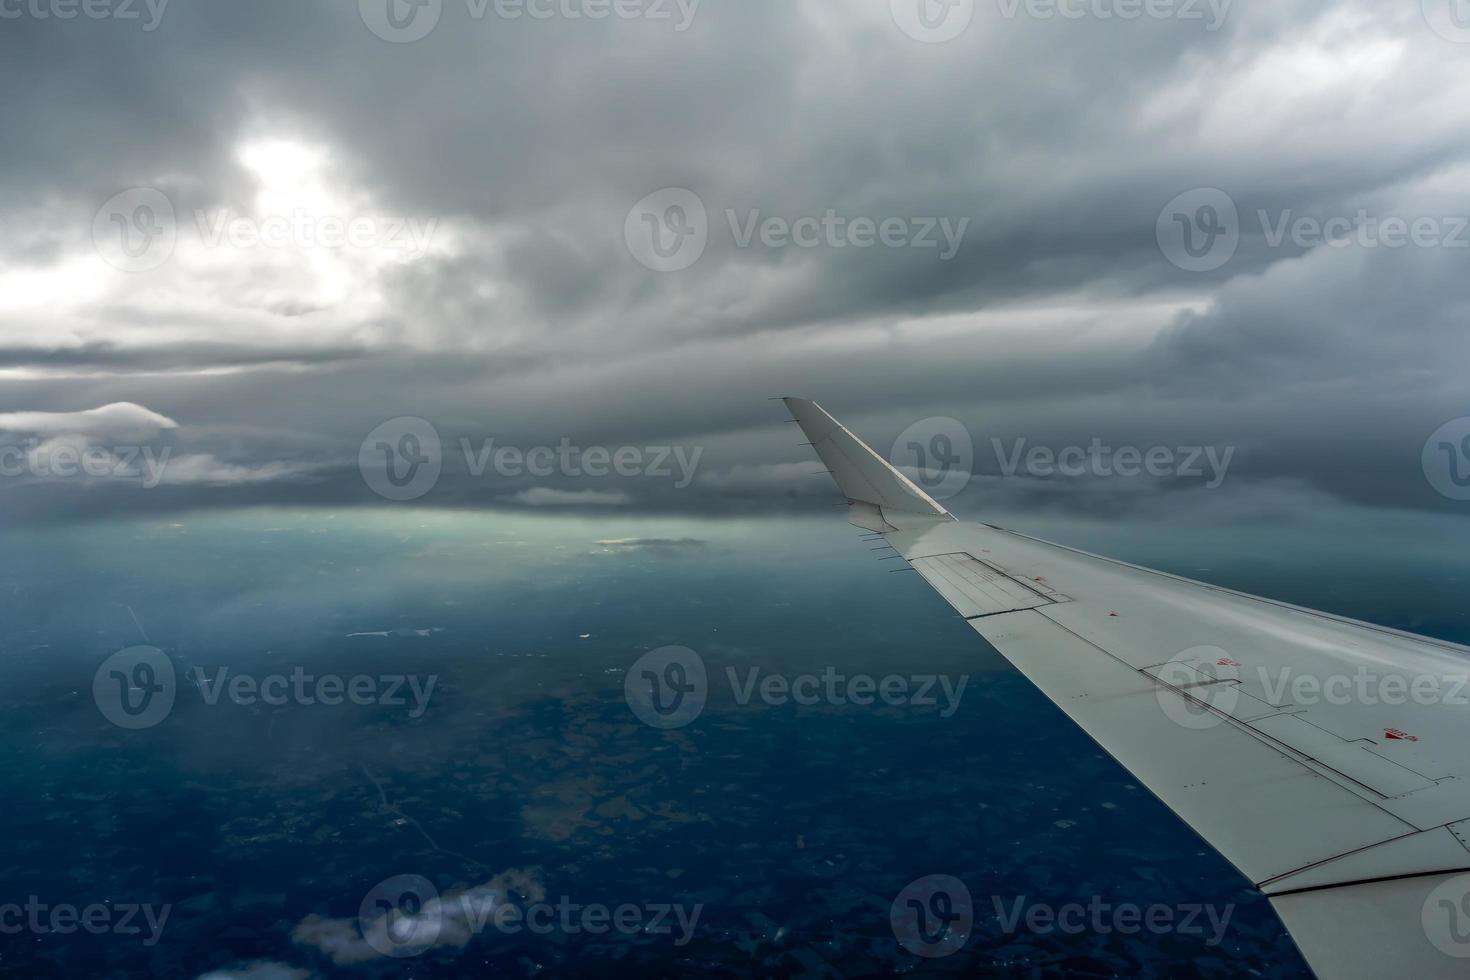 bela vista do alto do céu das nuvens do avião foto